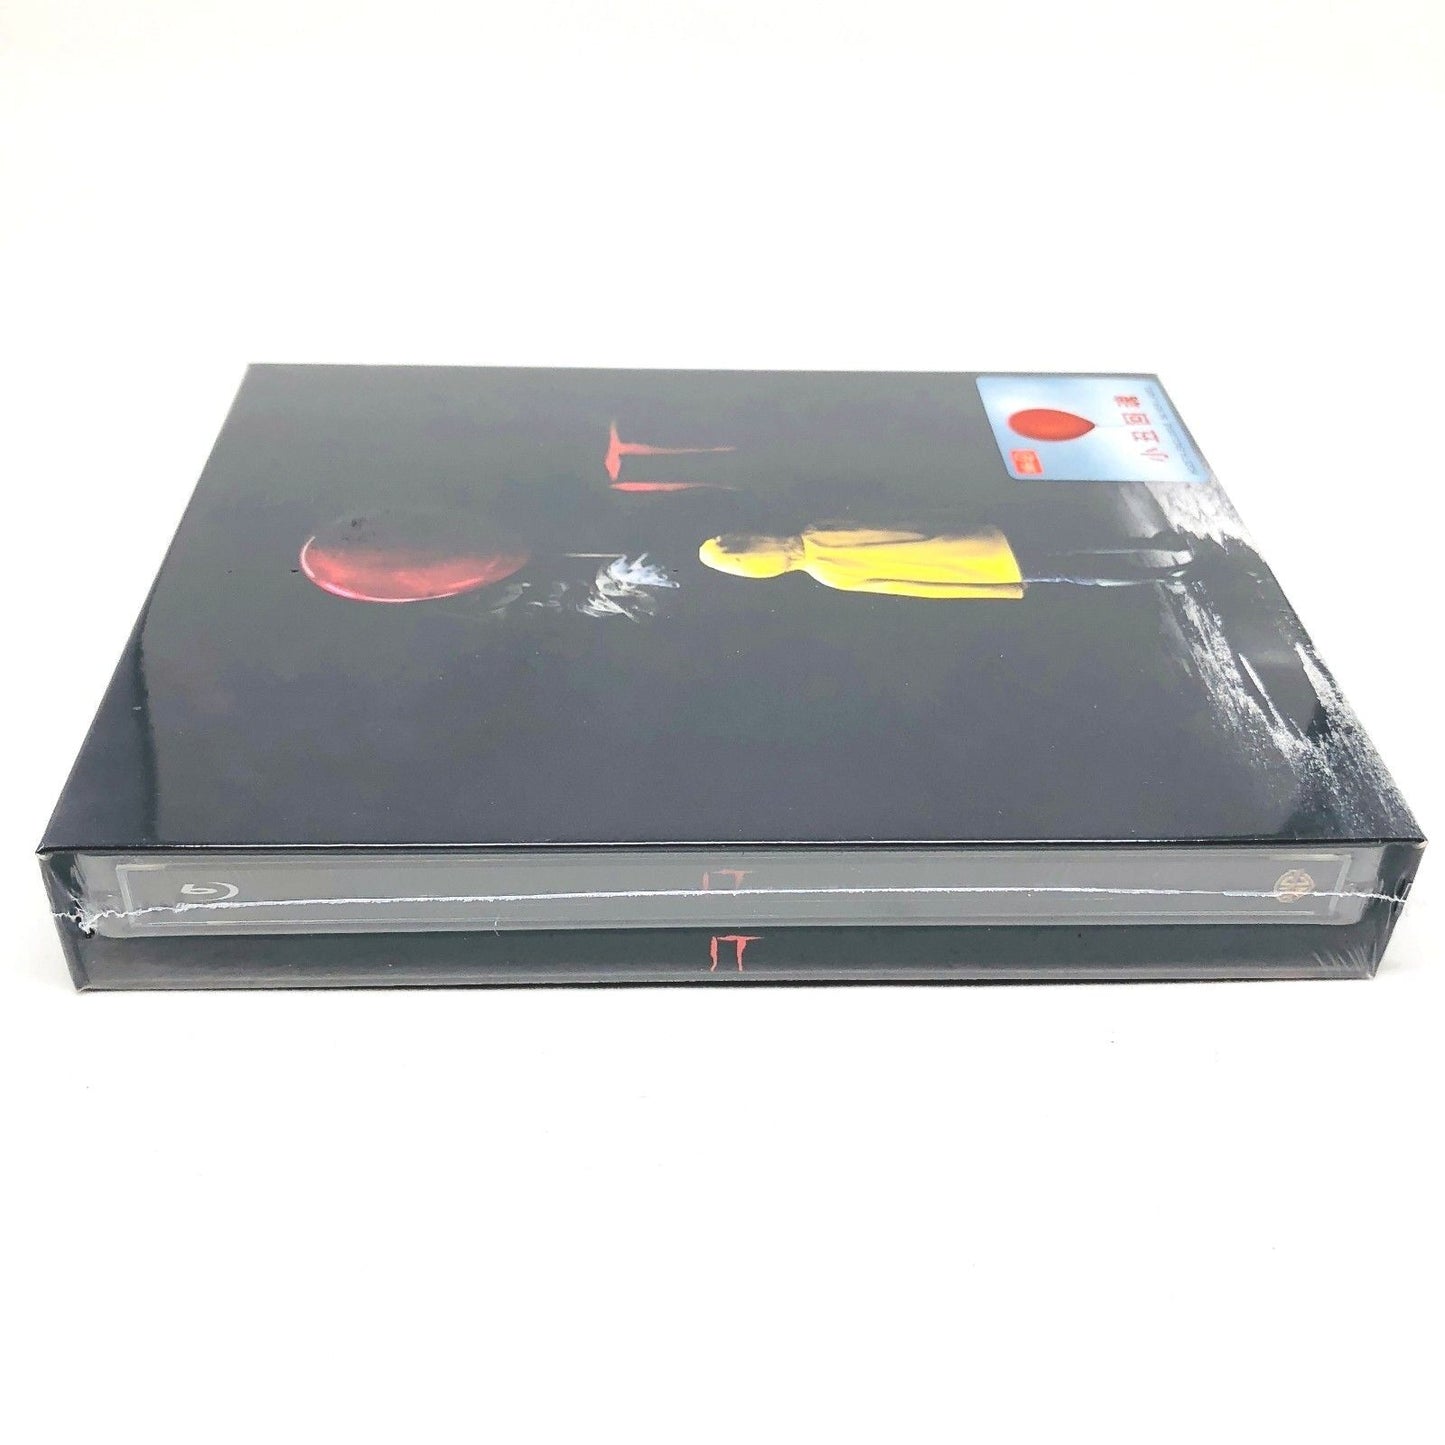 IT Steelbook Full Slip HDzeta Silver Label